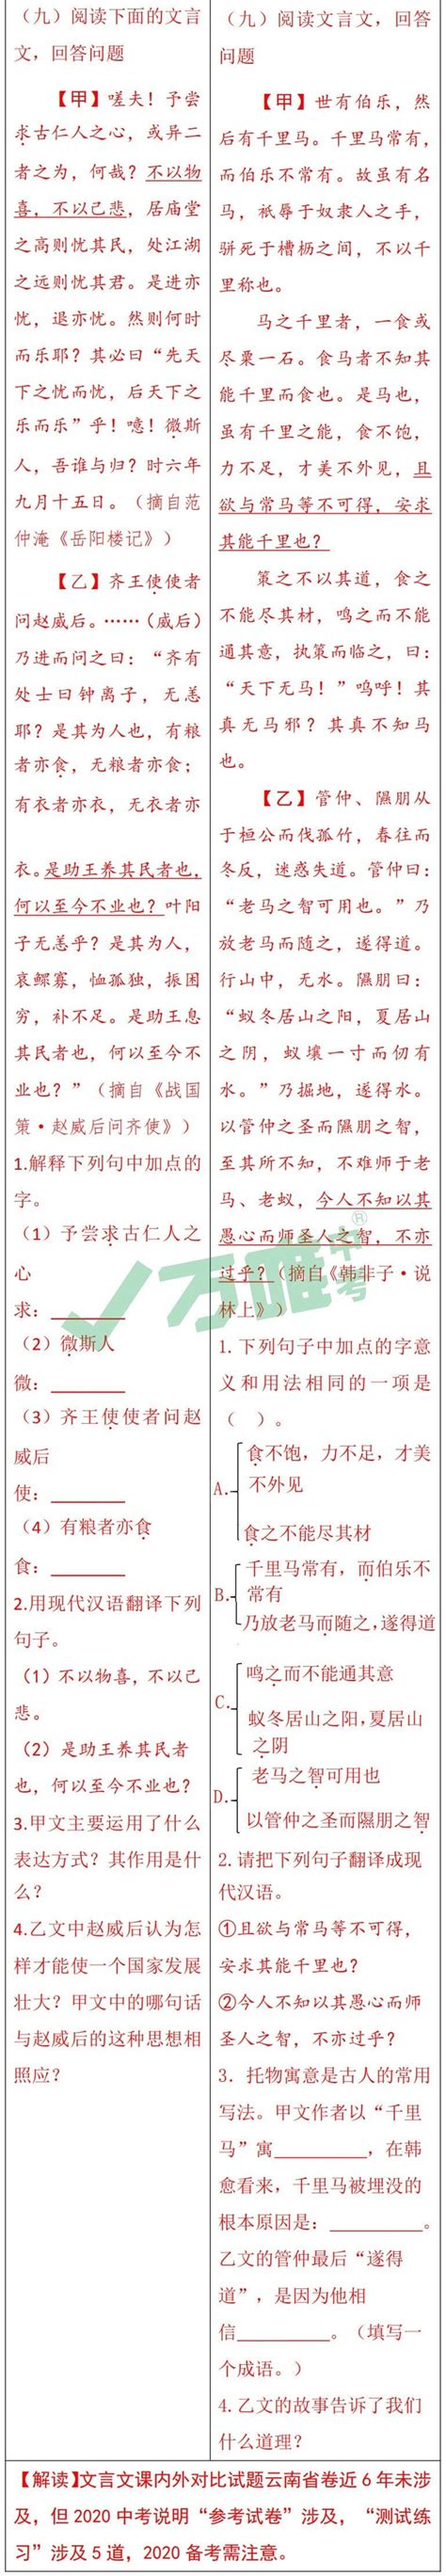 《2020年云南省初中学业水平标准与考试说明》新变化 - 中考原创好题用万唯